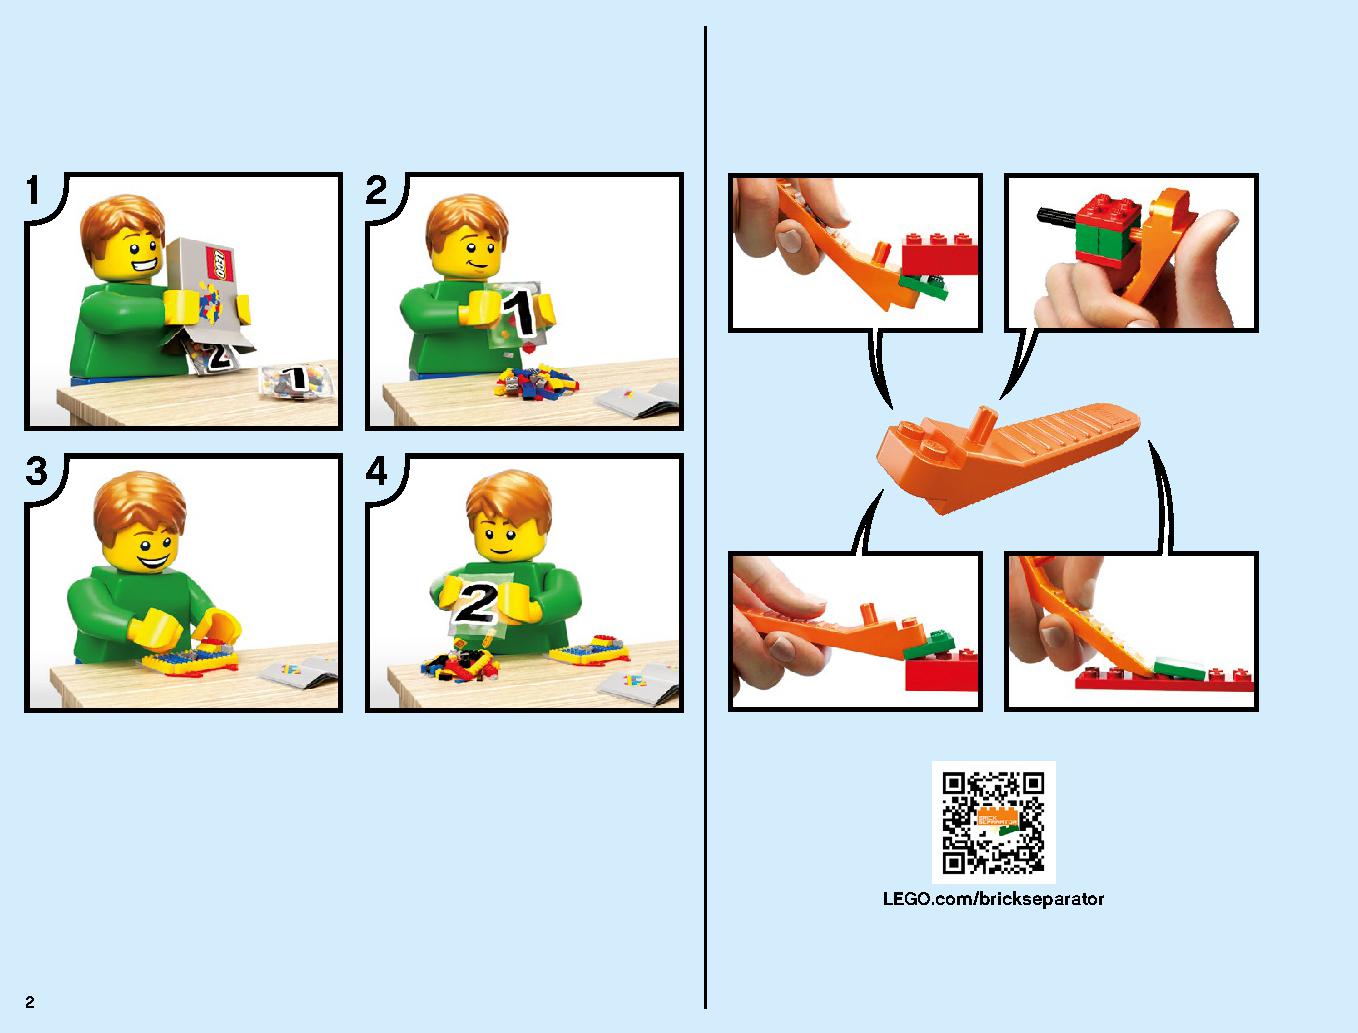 ニンジャゴーシティ・ポートパーク 70657 レゴの商品情報 レゴの説明書・組立方法 2 page